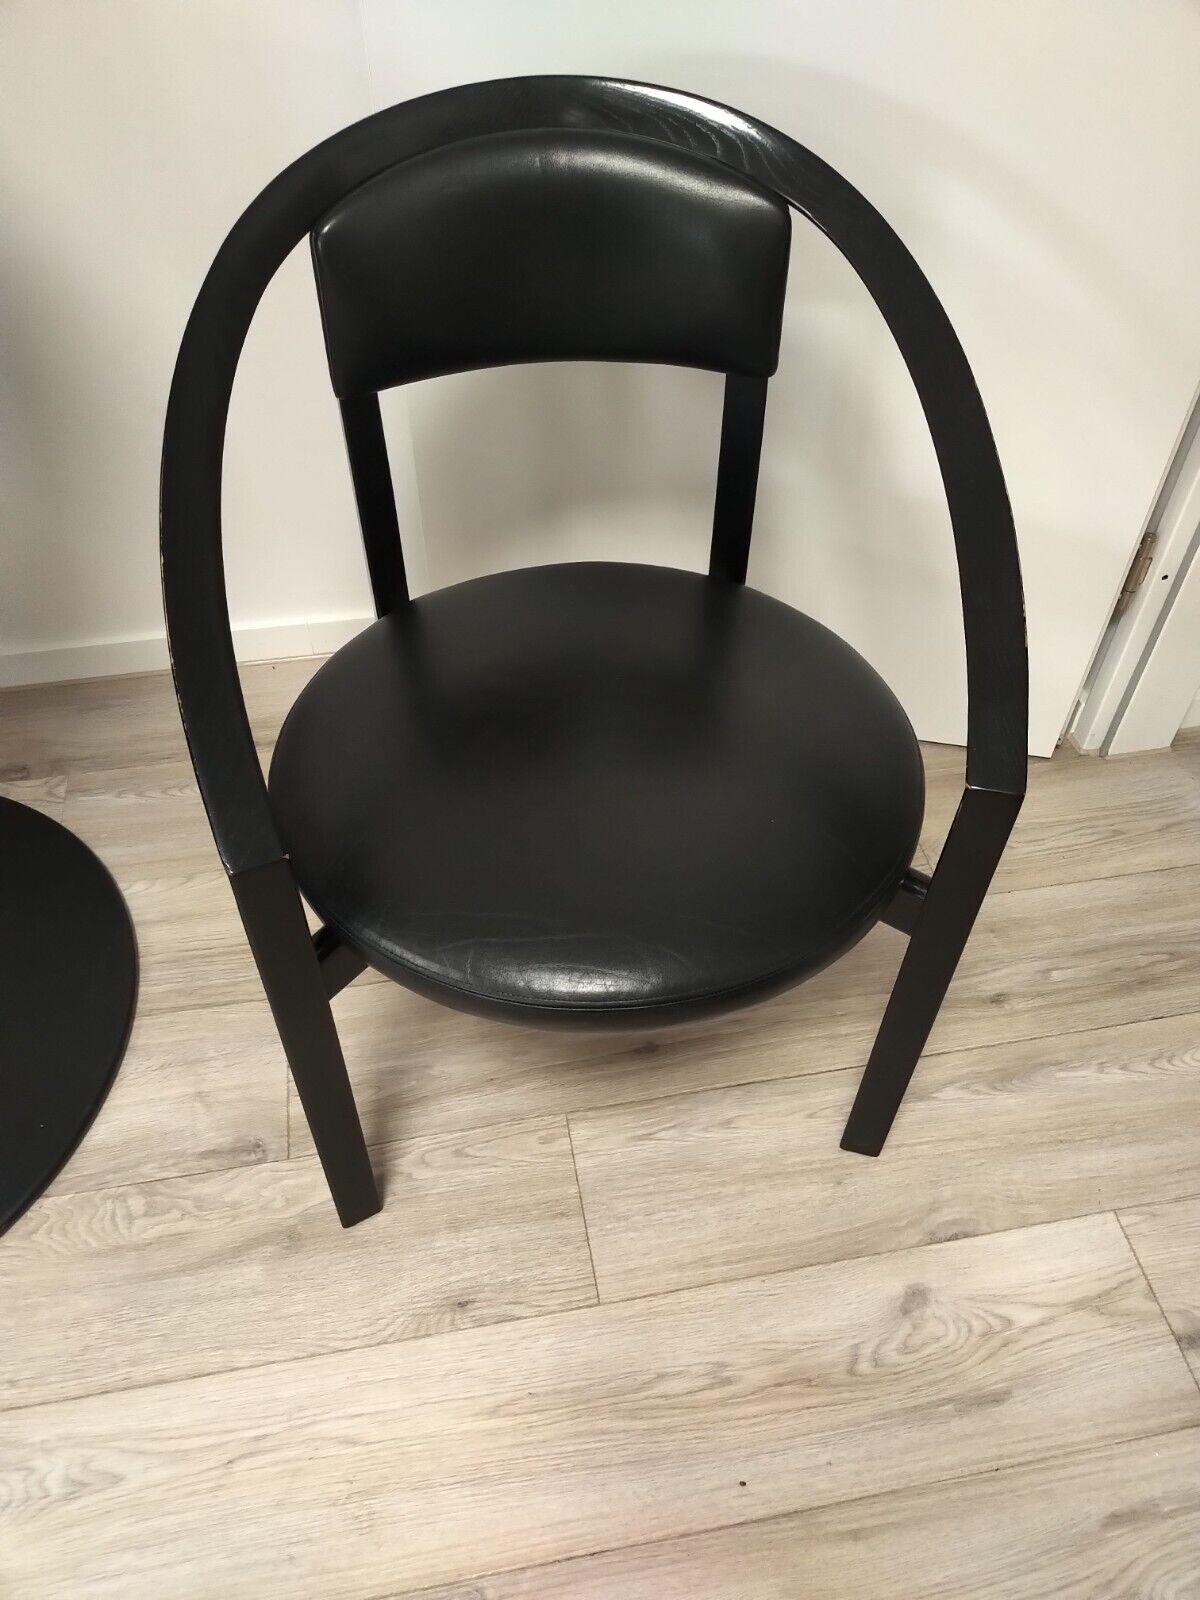 Rosenthal Stuhl sehr guter Zustand mit leichten Gebrauchsspuren.